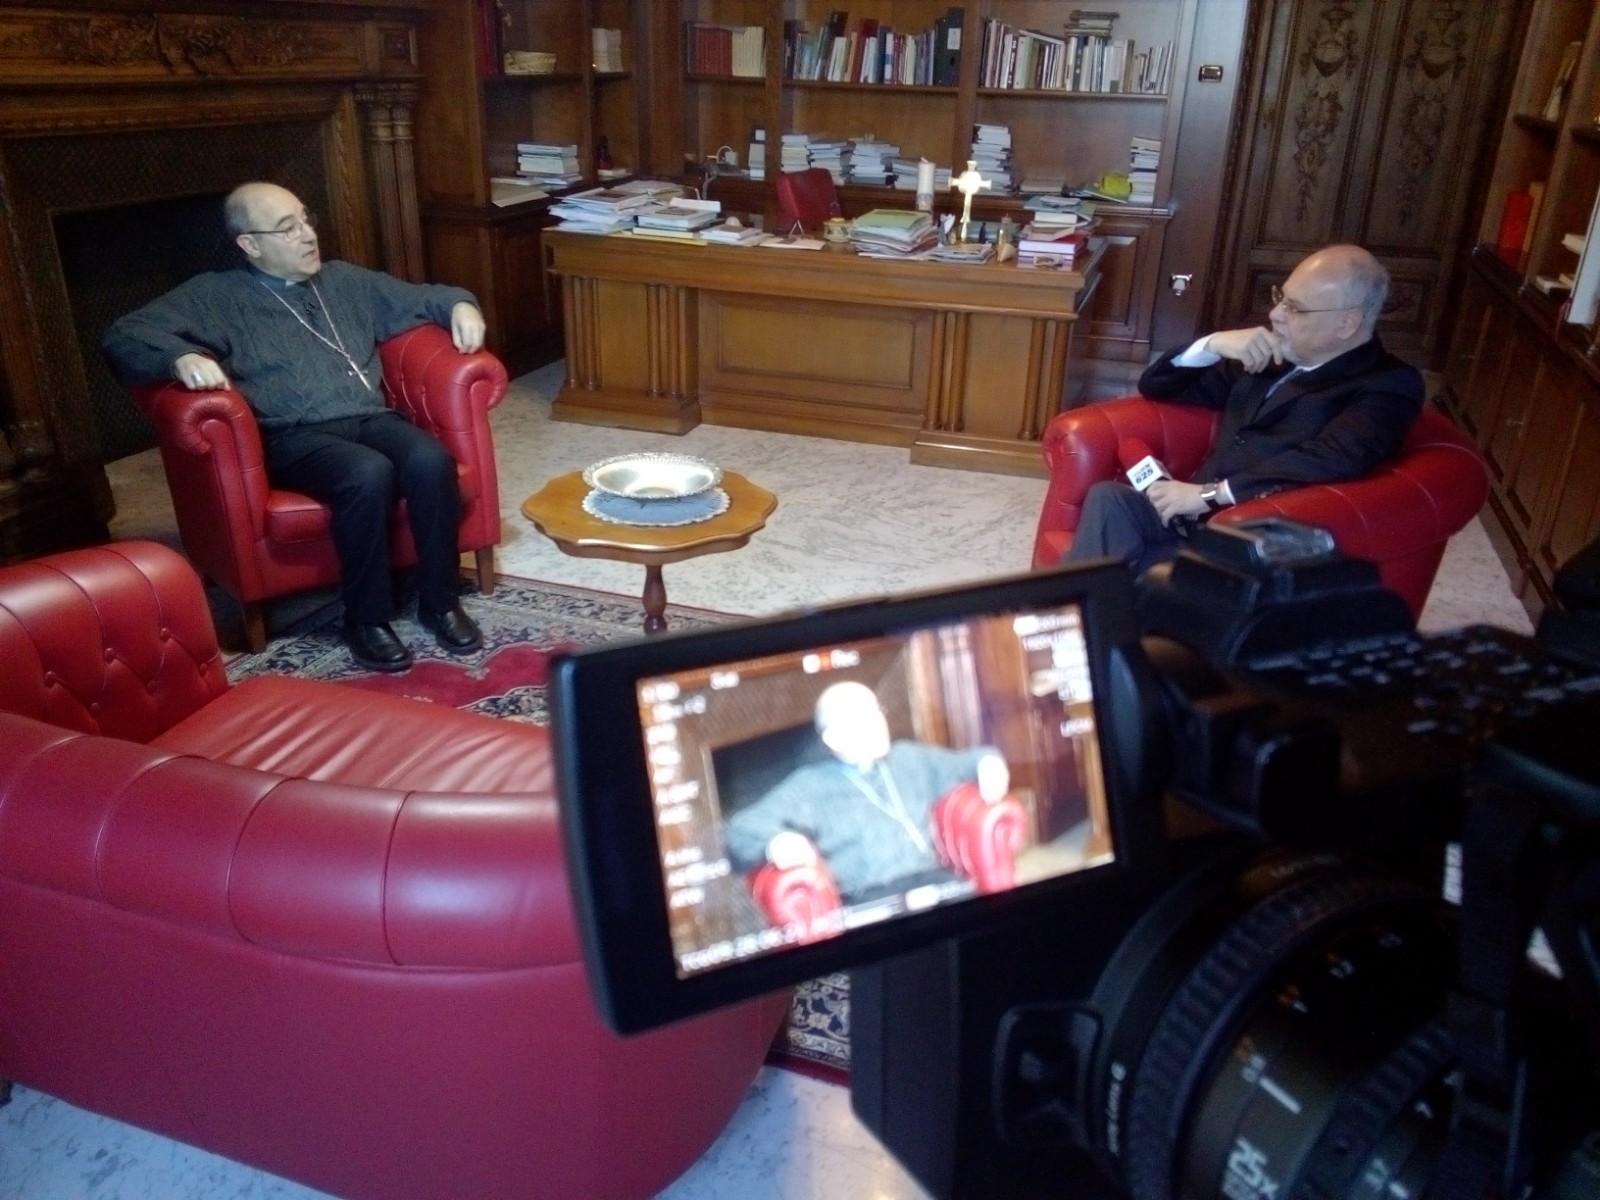 Benevento| Covid, Monsignor Accrocca: l’ora di “osare” nel mondo che verrà